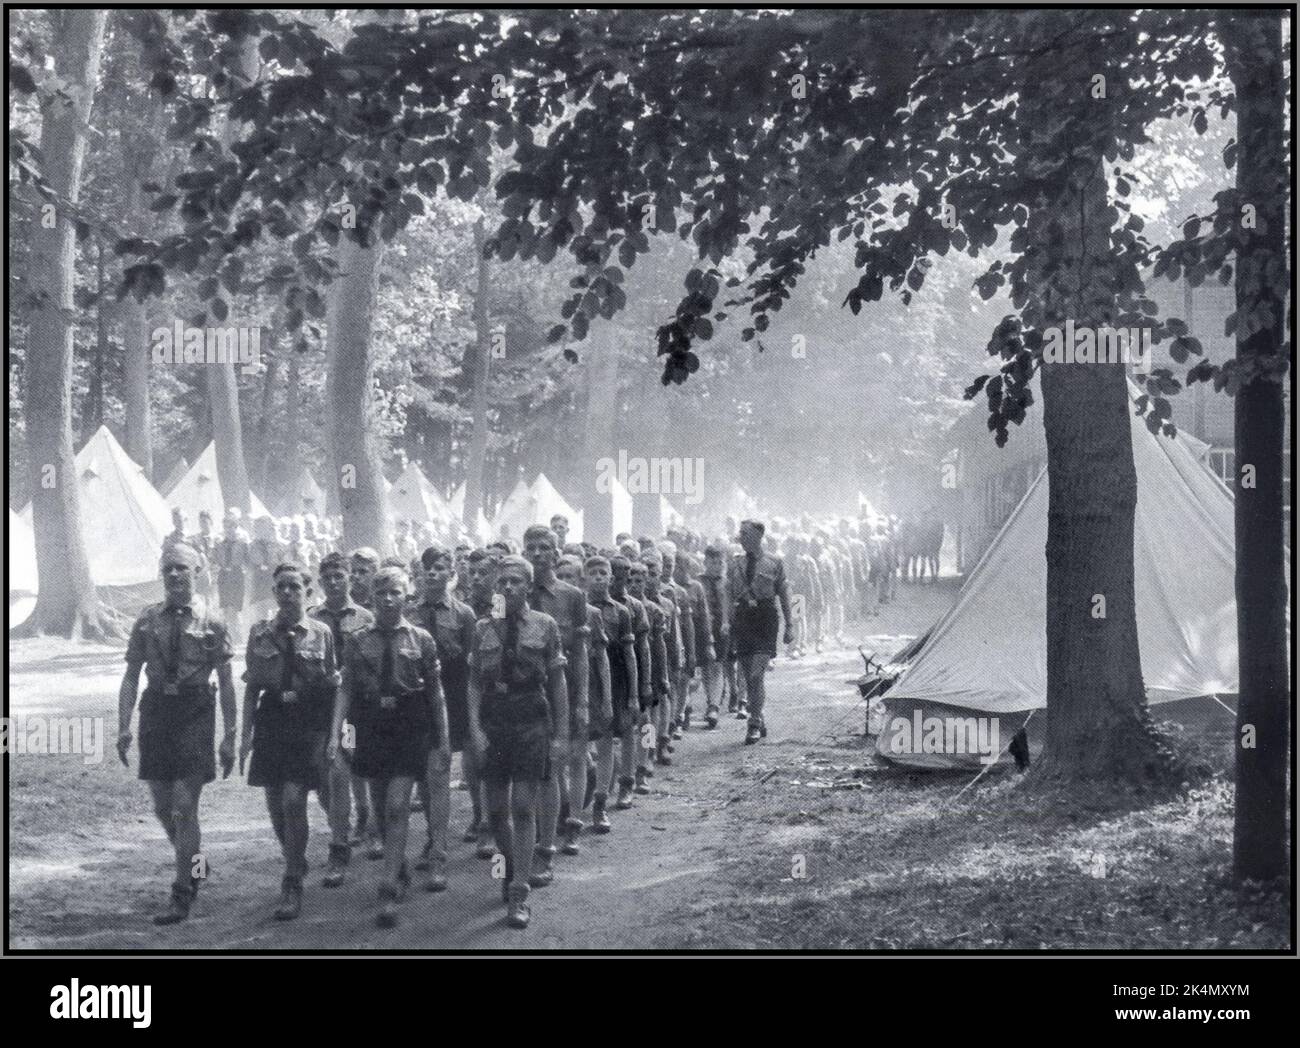 Hitler Jugend Hitlerjugend Lager in Uniform, für junge impressionable Jungen und Jugendliche, die durch Propaganda und Indoktrination geführt werden, um in die Freuden des reinen arischen zukünftigen Nazi-Deutschland-Lebens erzogen zu werden 1936 Stockfoto